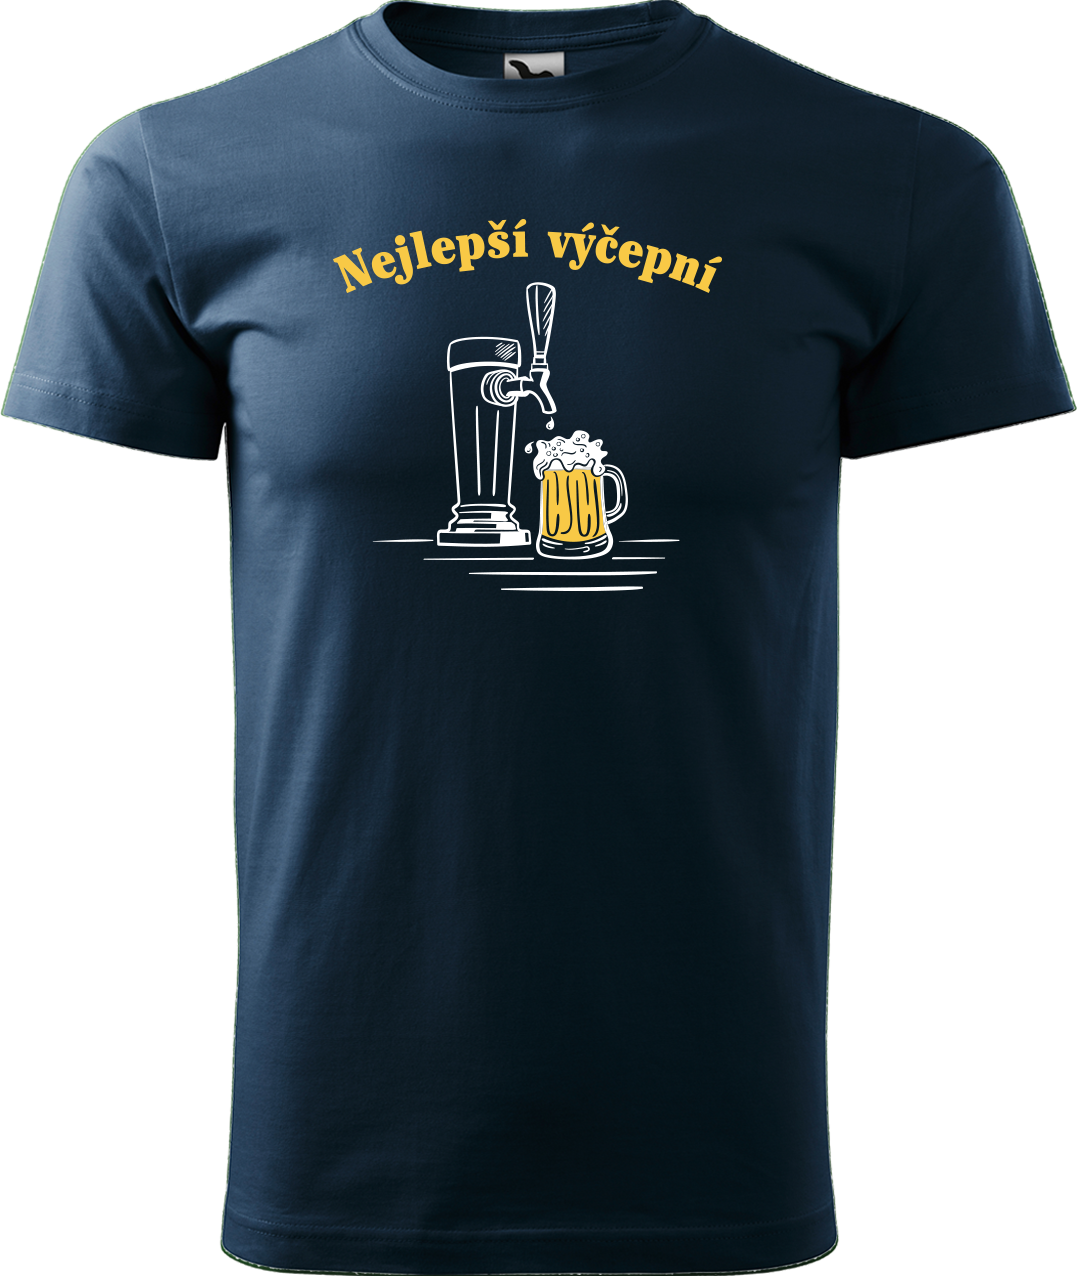 Pivní tričko - Nejlepší výčepní Velikost: 2XL, Barva: Námořní modrá (02)